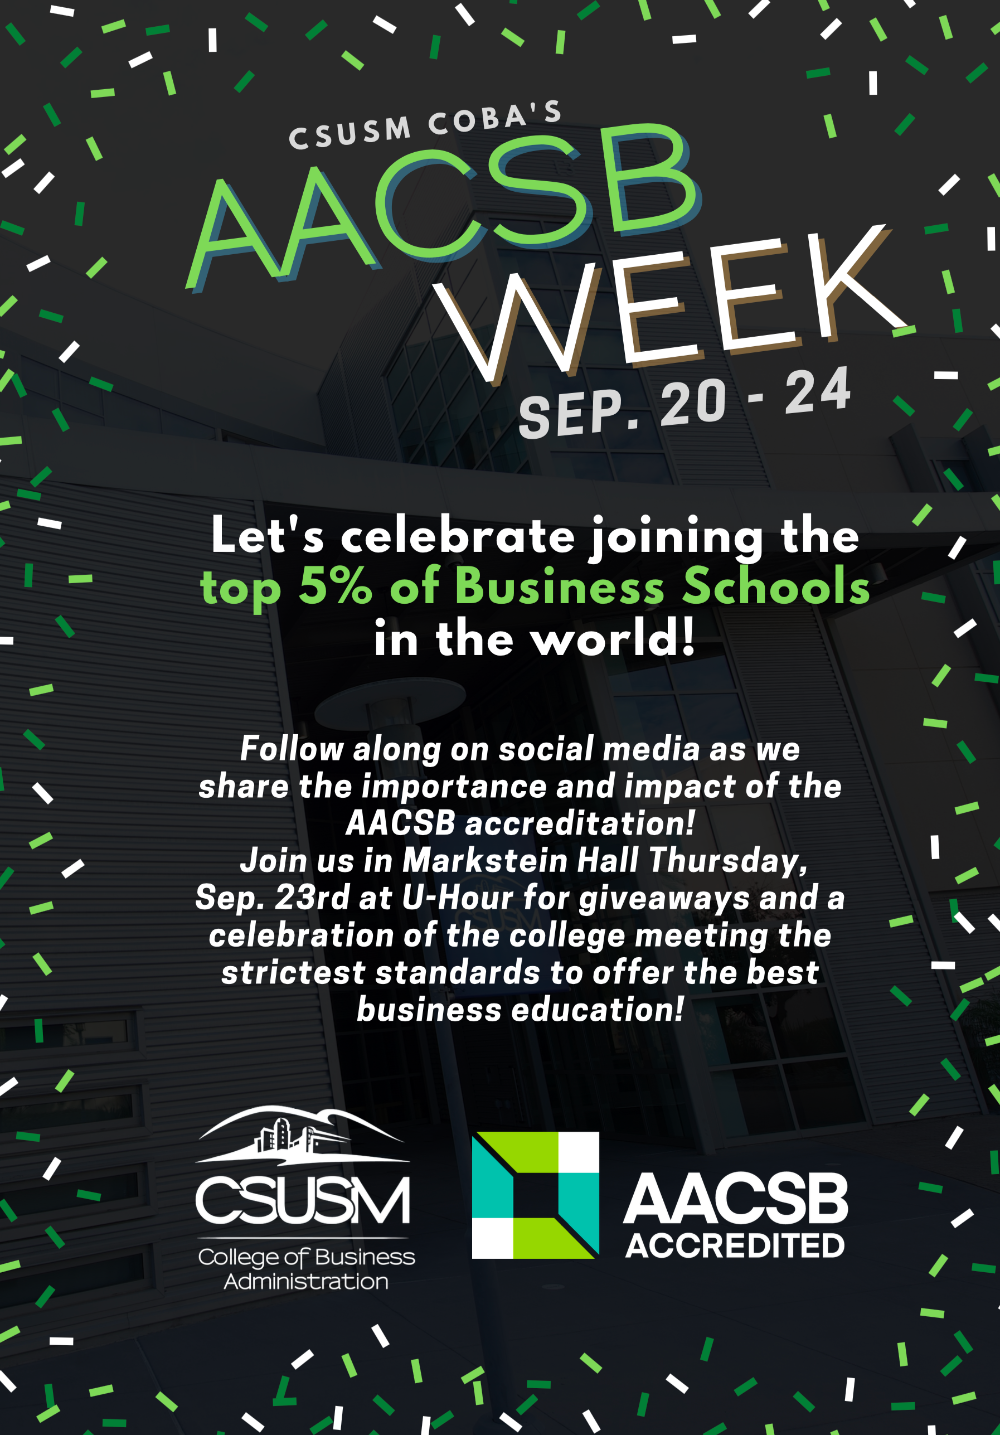 AACSB week flyer